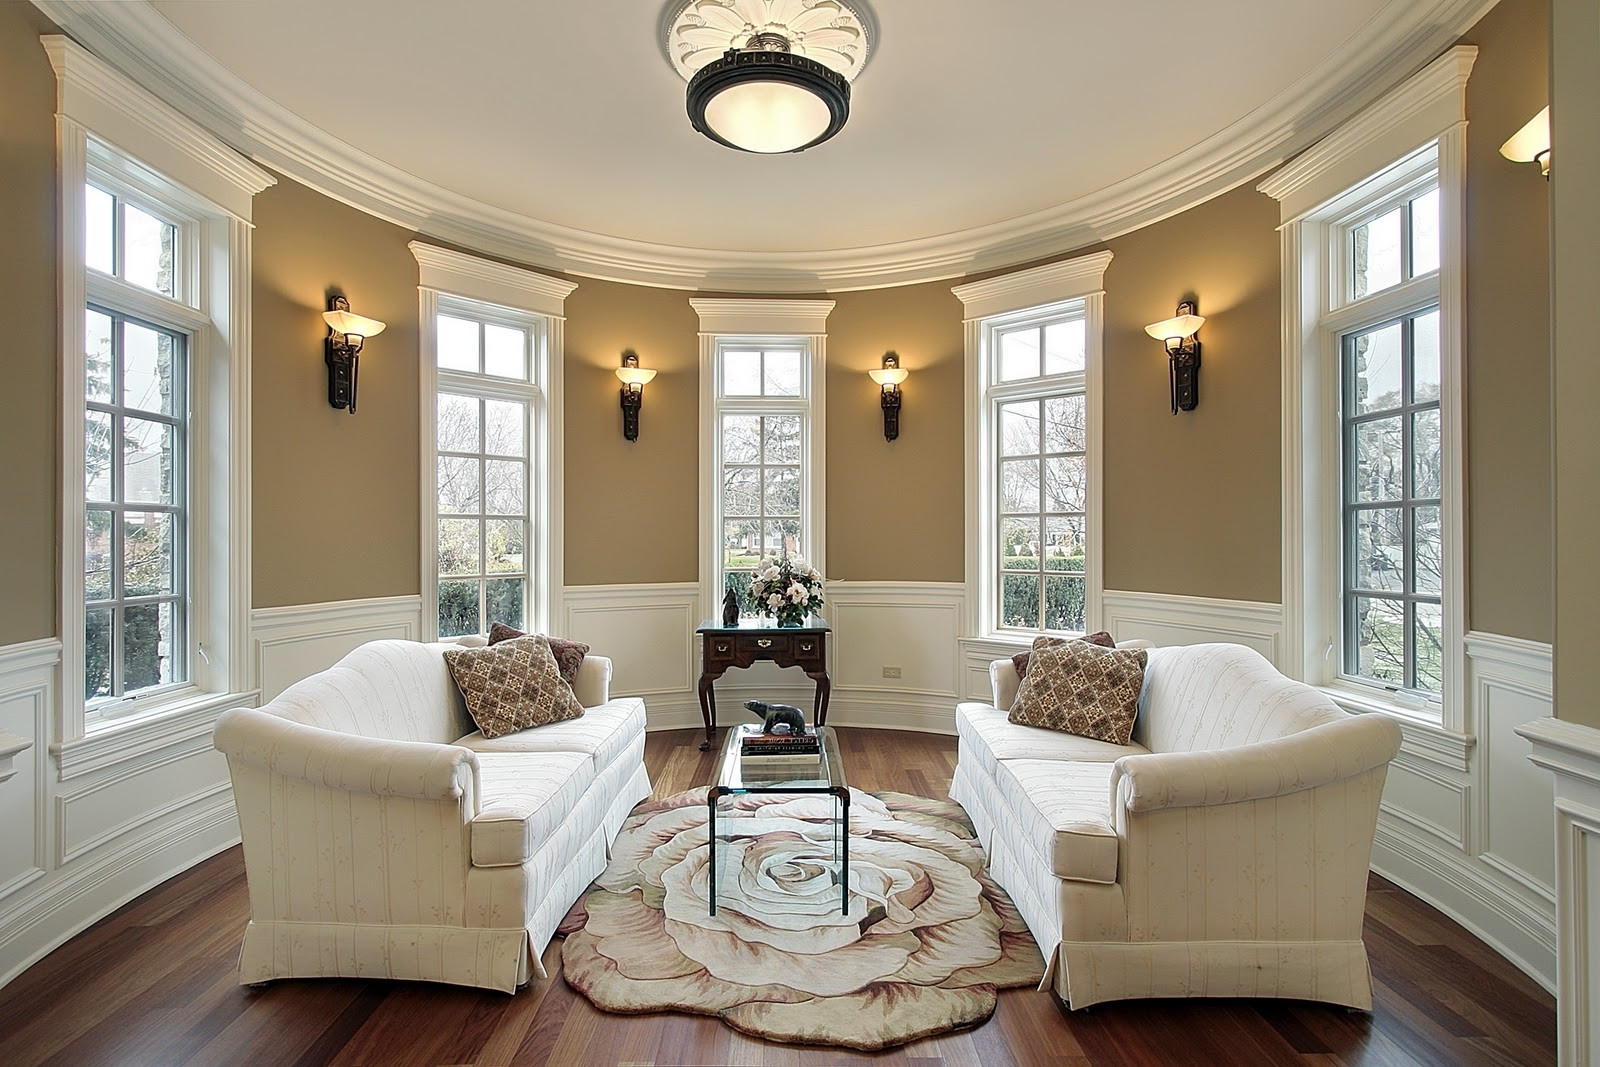 Living Room Overhead Lighting
 5 Top Tips For The Best Light Fixtures